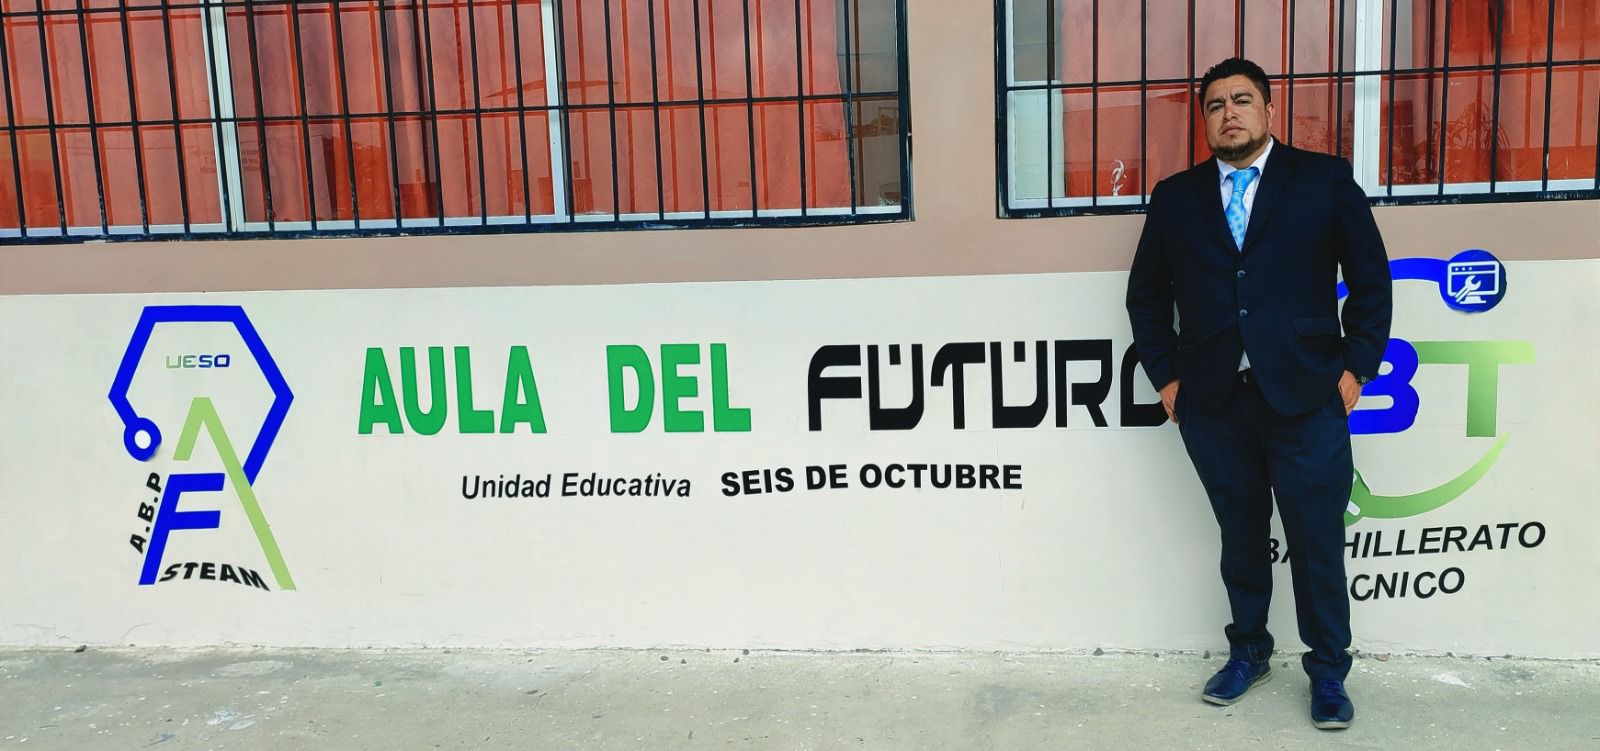 Jorge Peña Guevara, un docente innovador que impulsa proyectos tecnológicos